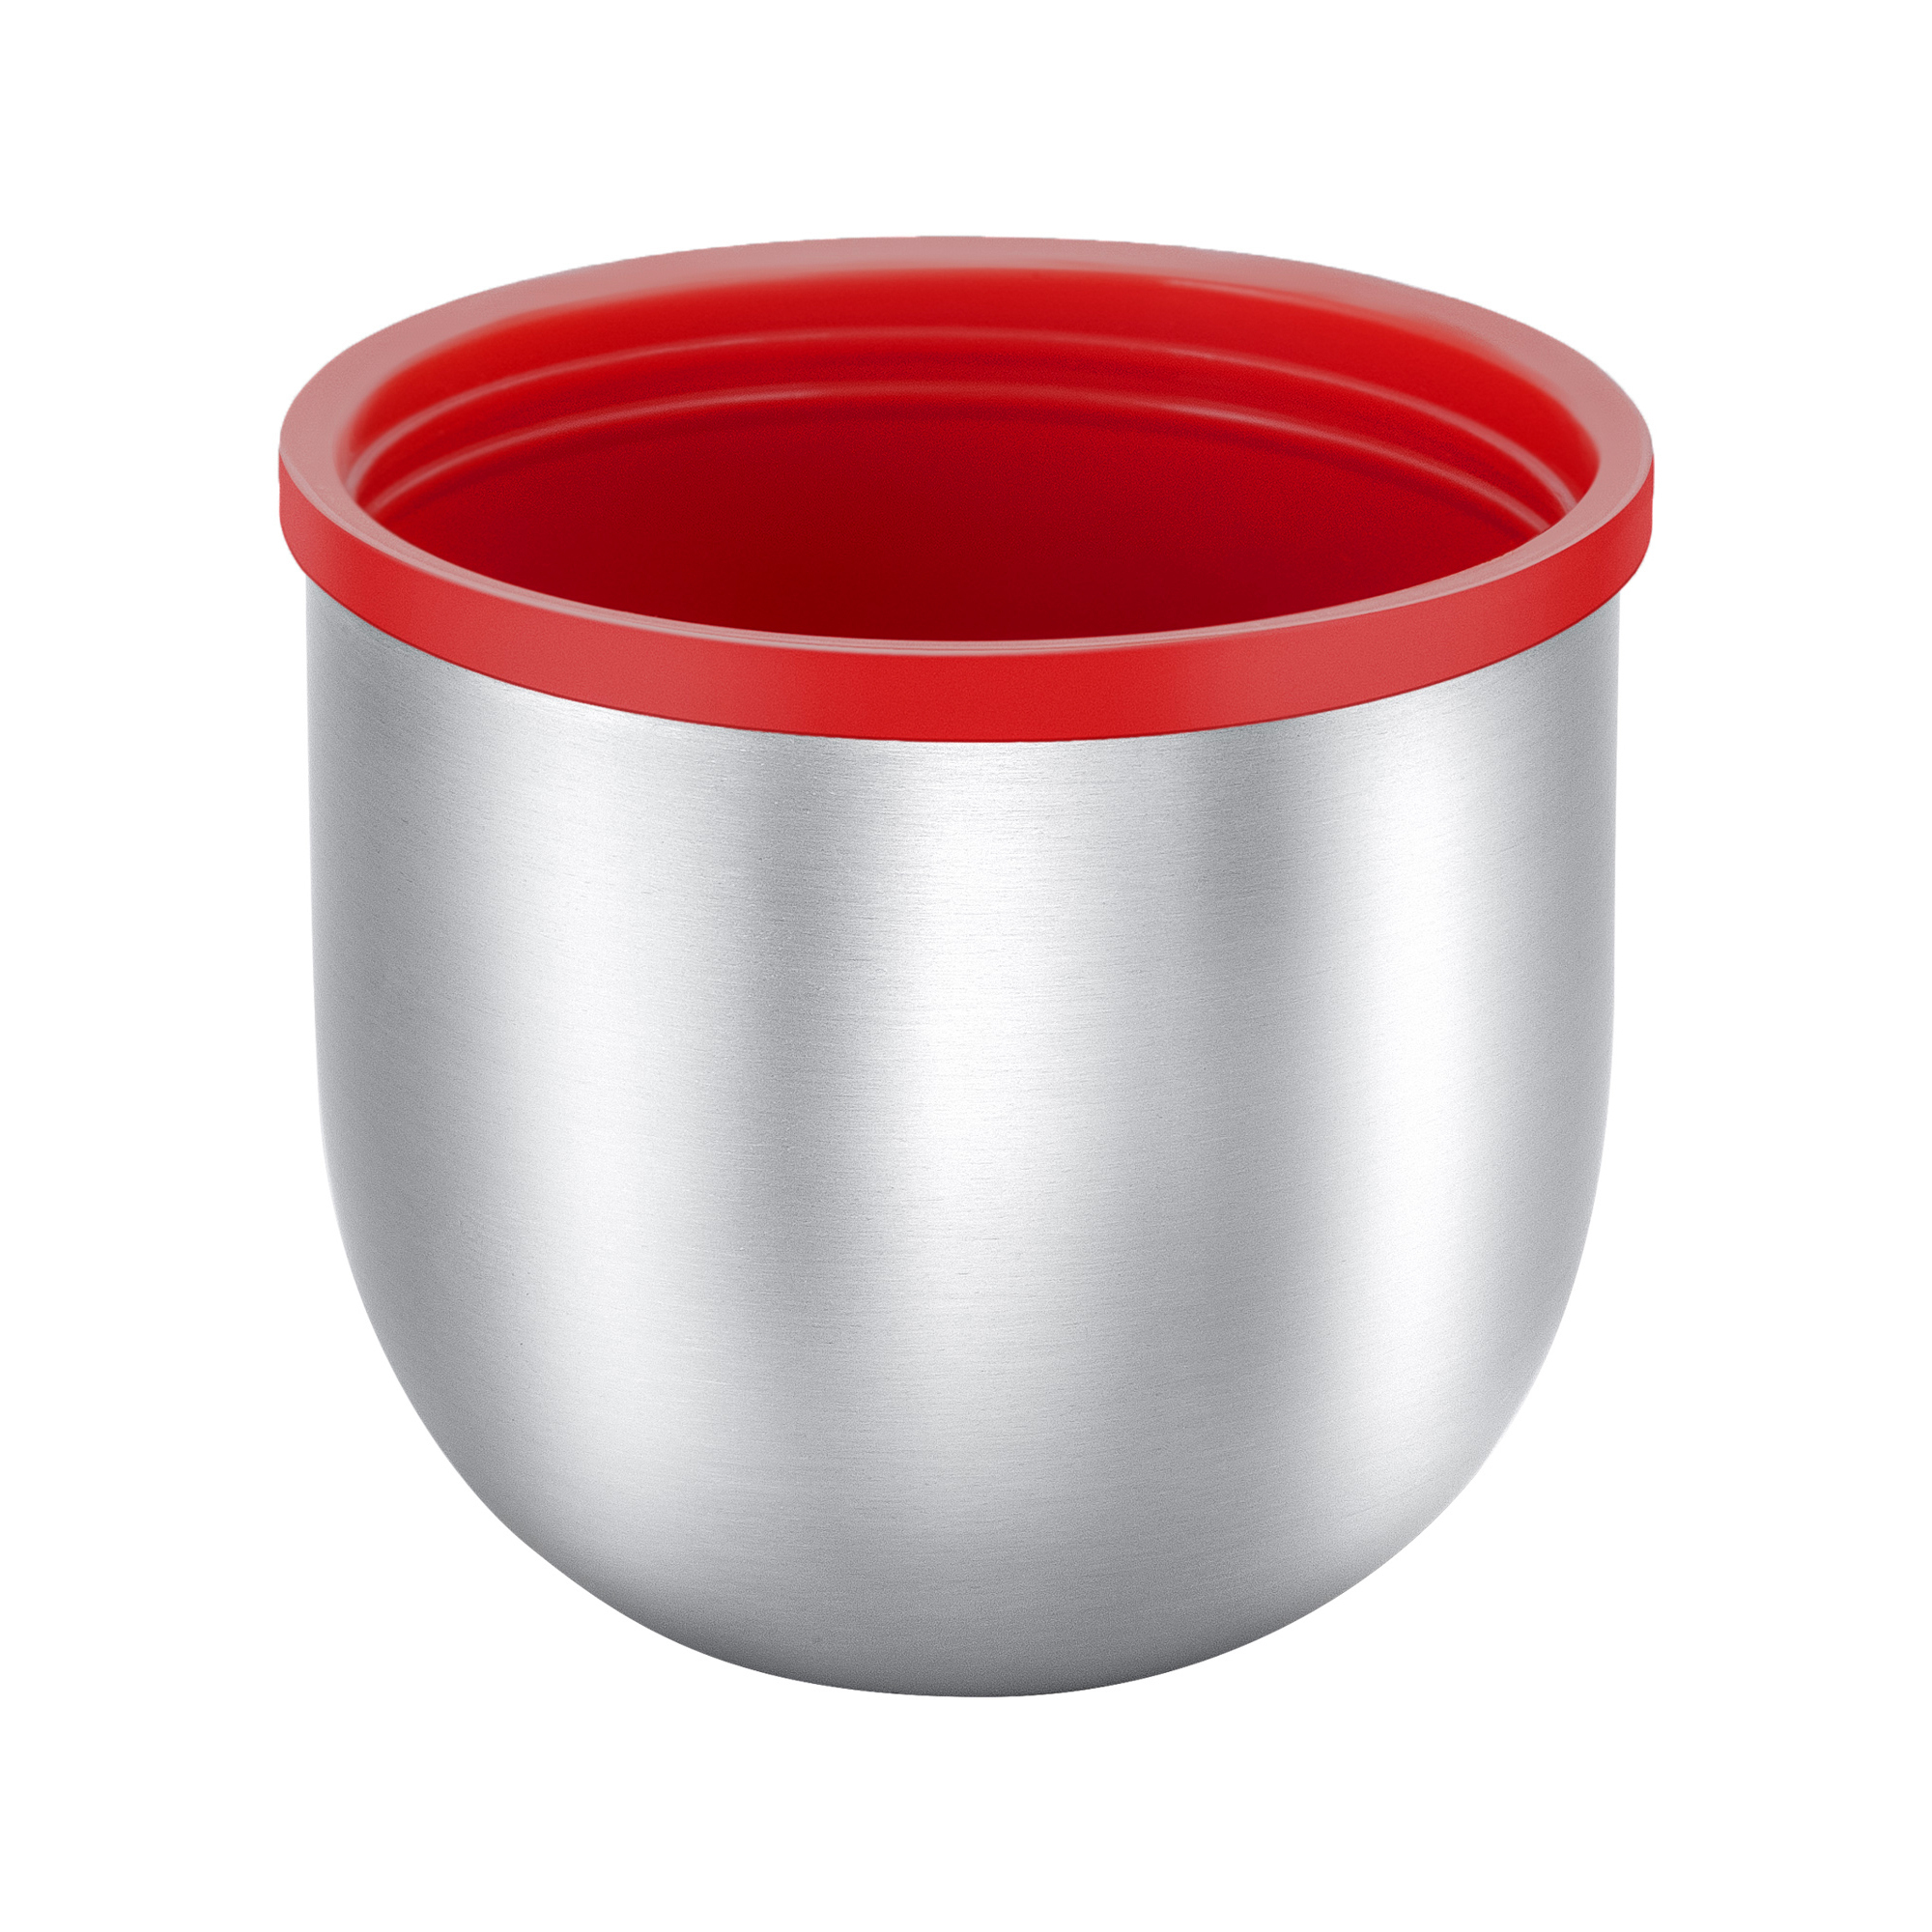 Чашка для термосов Relaxika 101 серии (от 0,75 л. и более), стальная (техн.упаковка)